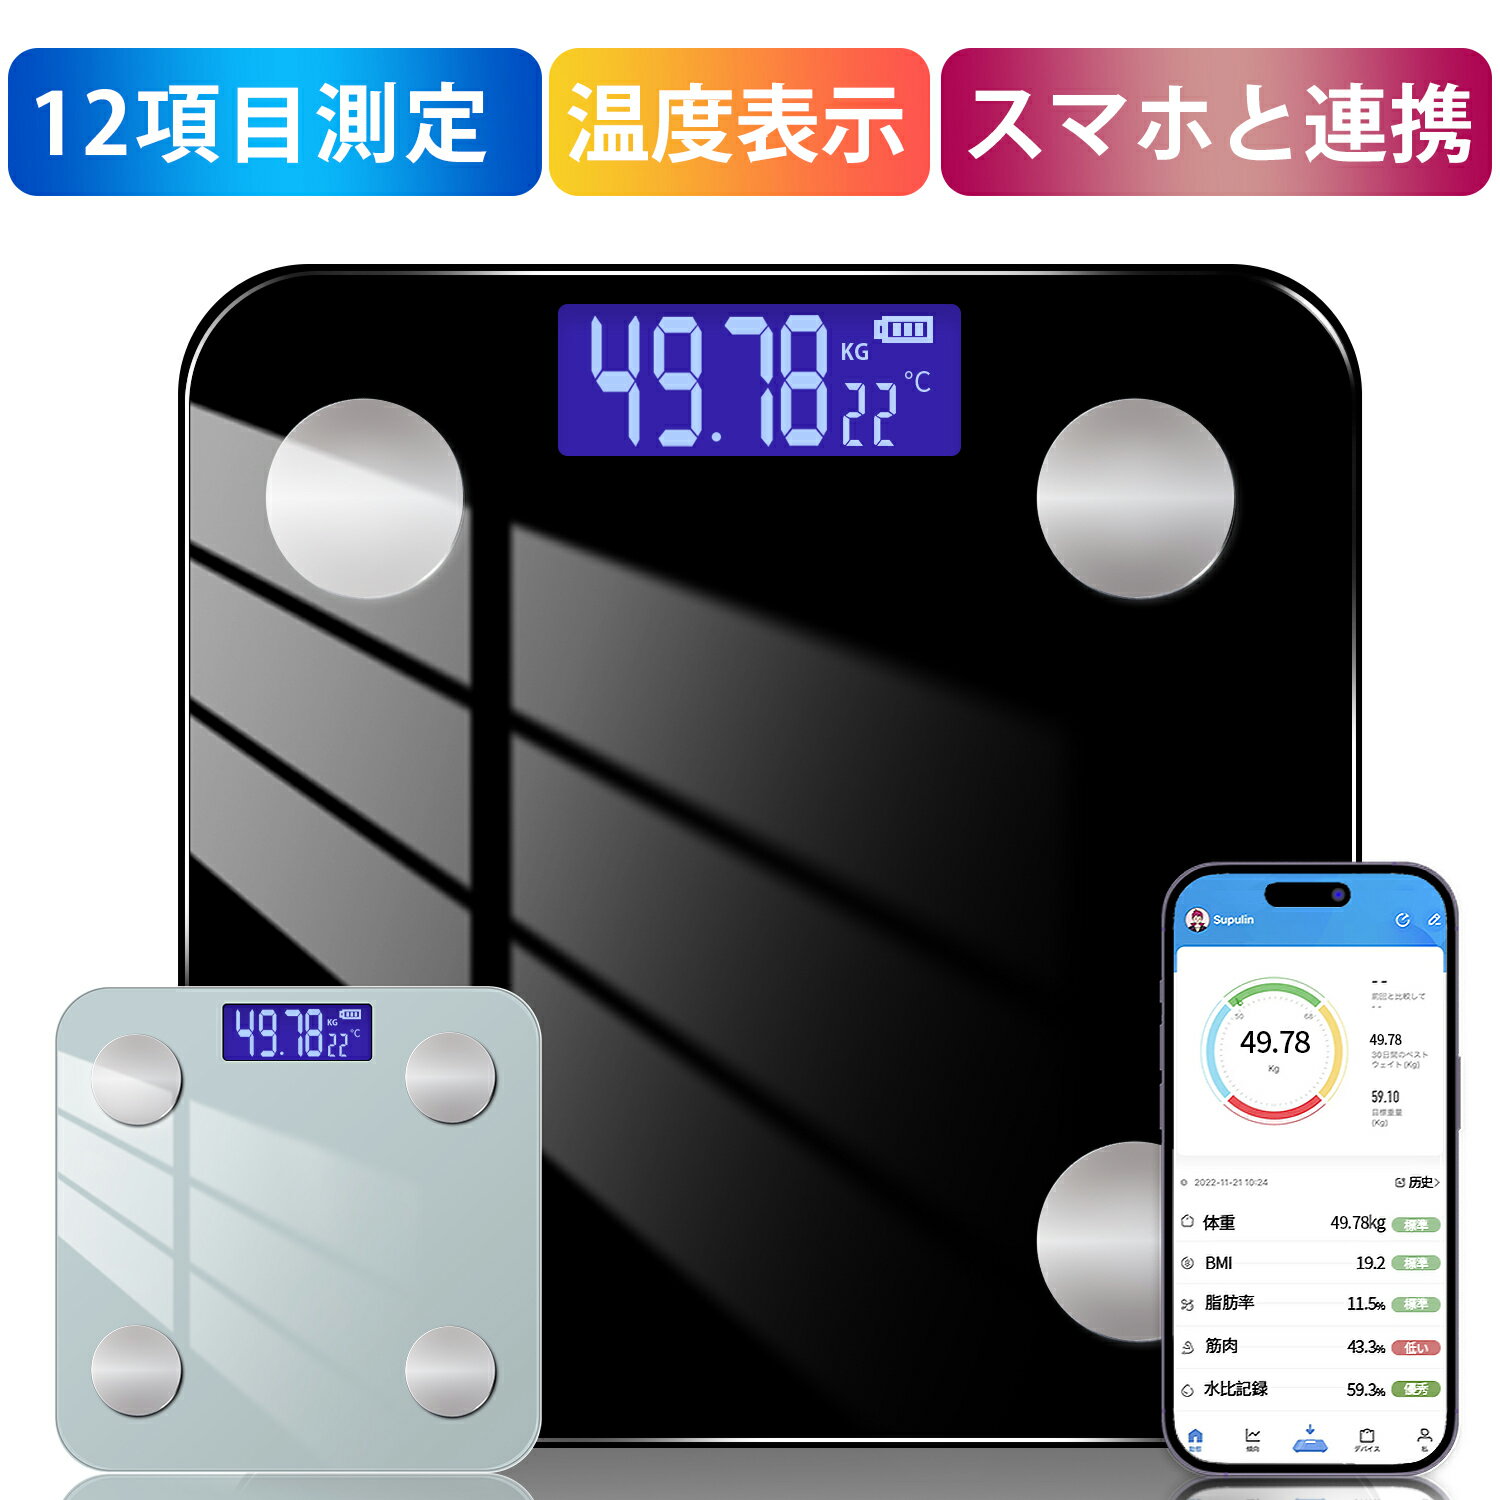 高性能の体重計 【日本検品✨あす楽】体重計 体脂肪計 体組成計 スマホ連動 Bluetooth接続 ヘルスメーター たいじゅうけい 内臓脂肪 12項目測定 7人登録可能 専用アプリ 高精度 基礎代謝 BMIなど測定 IOS/Android対応